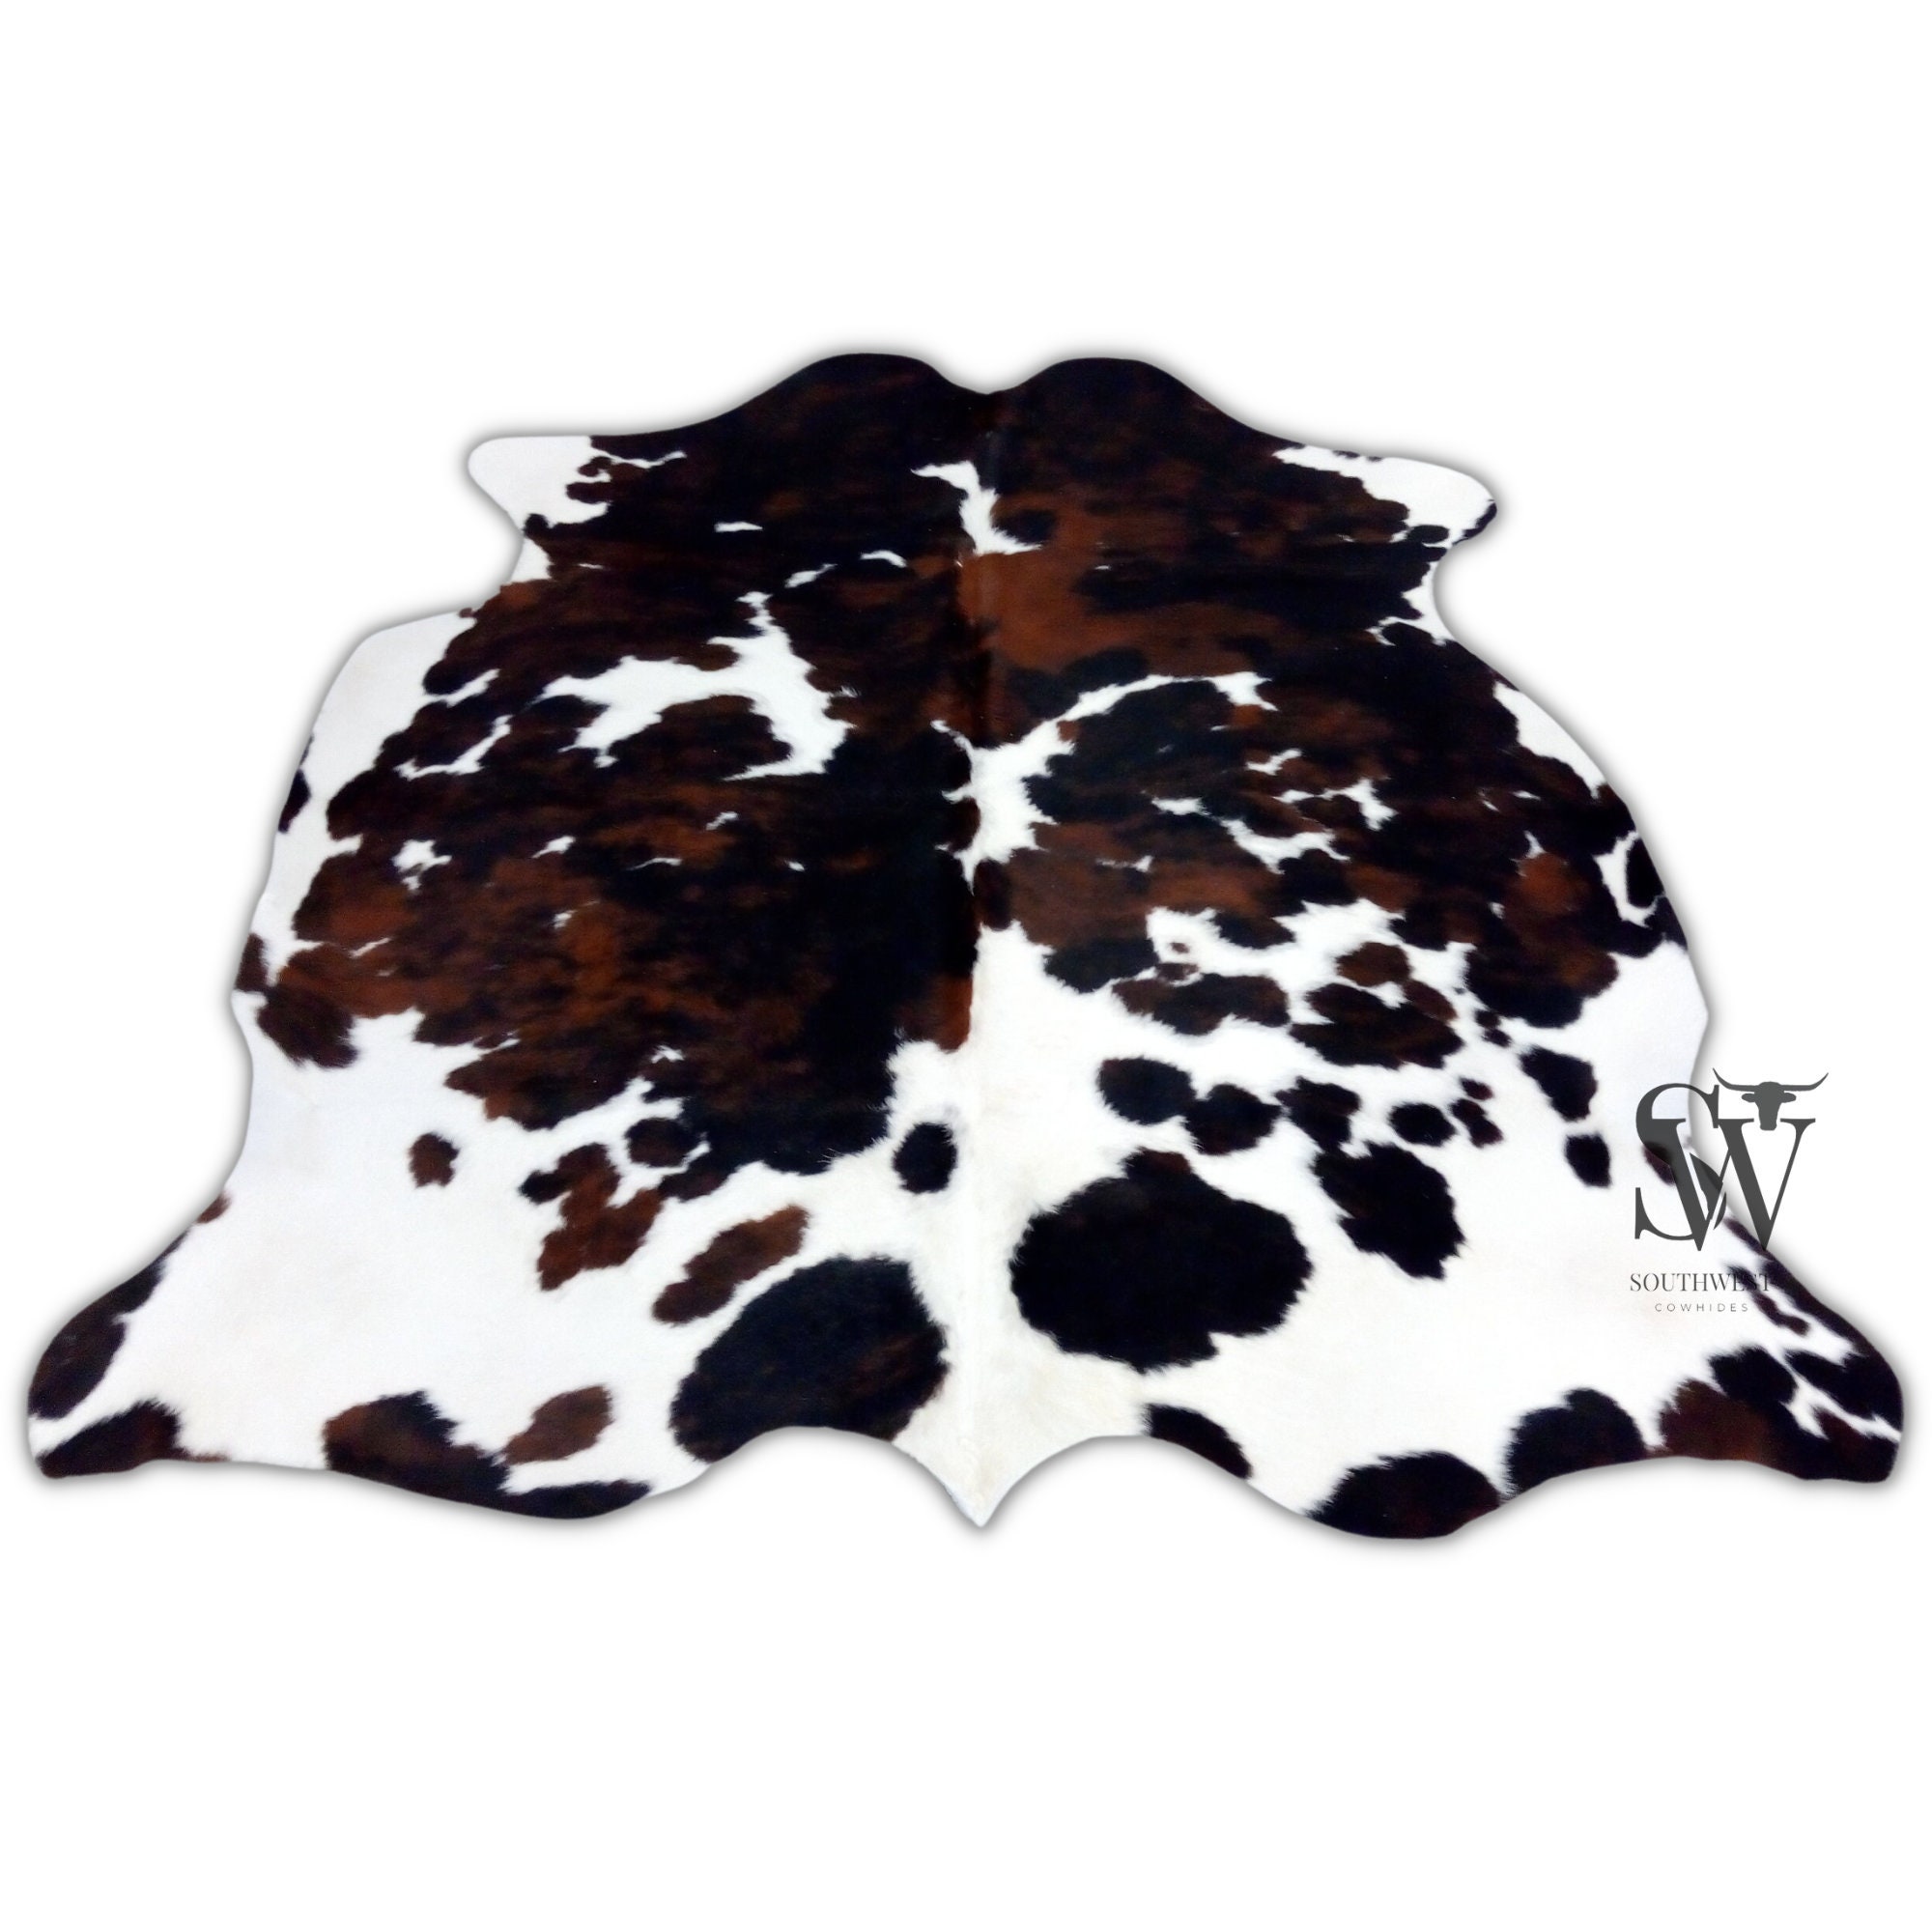 Tricolor COWHIDE RUG (XL 7'x6' Ft, L 6'x5'5" Ft)- Premium Cow Skin Rug Cow Hide Carpet